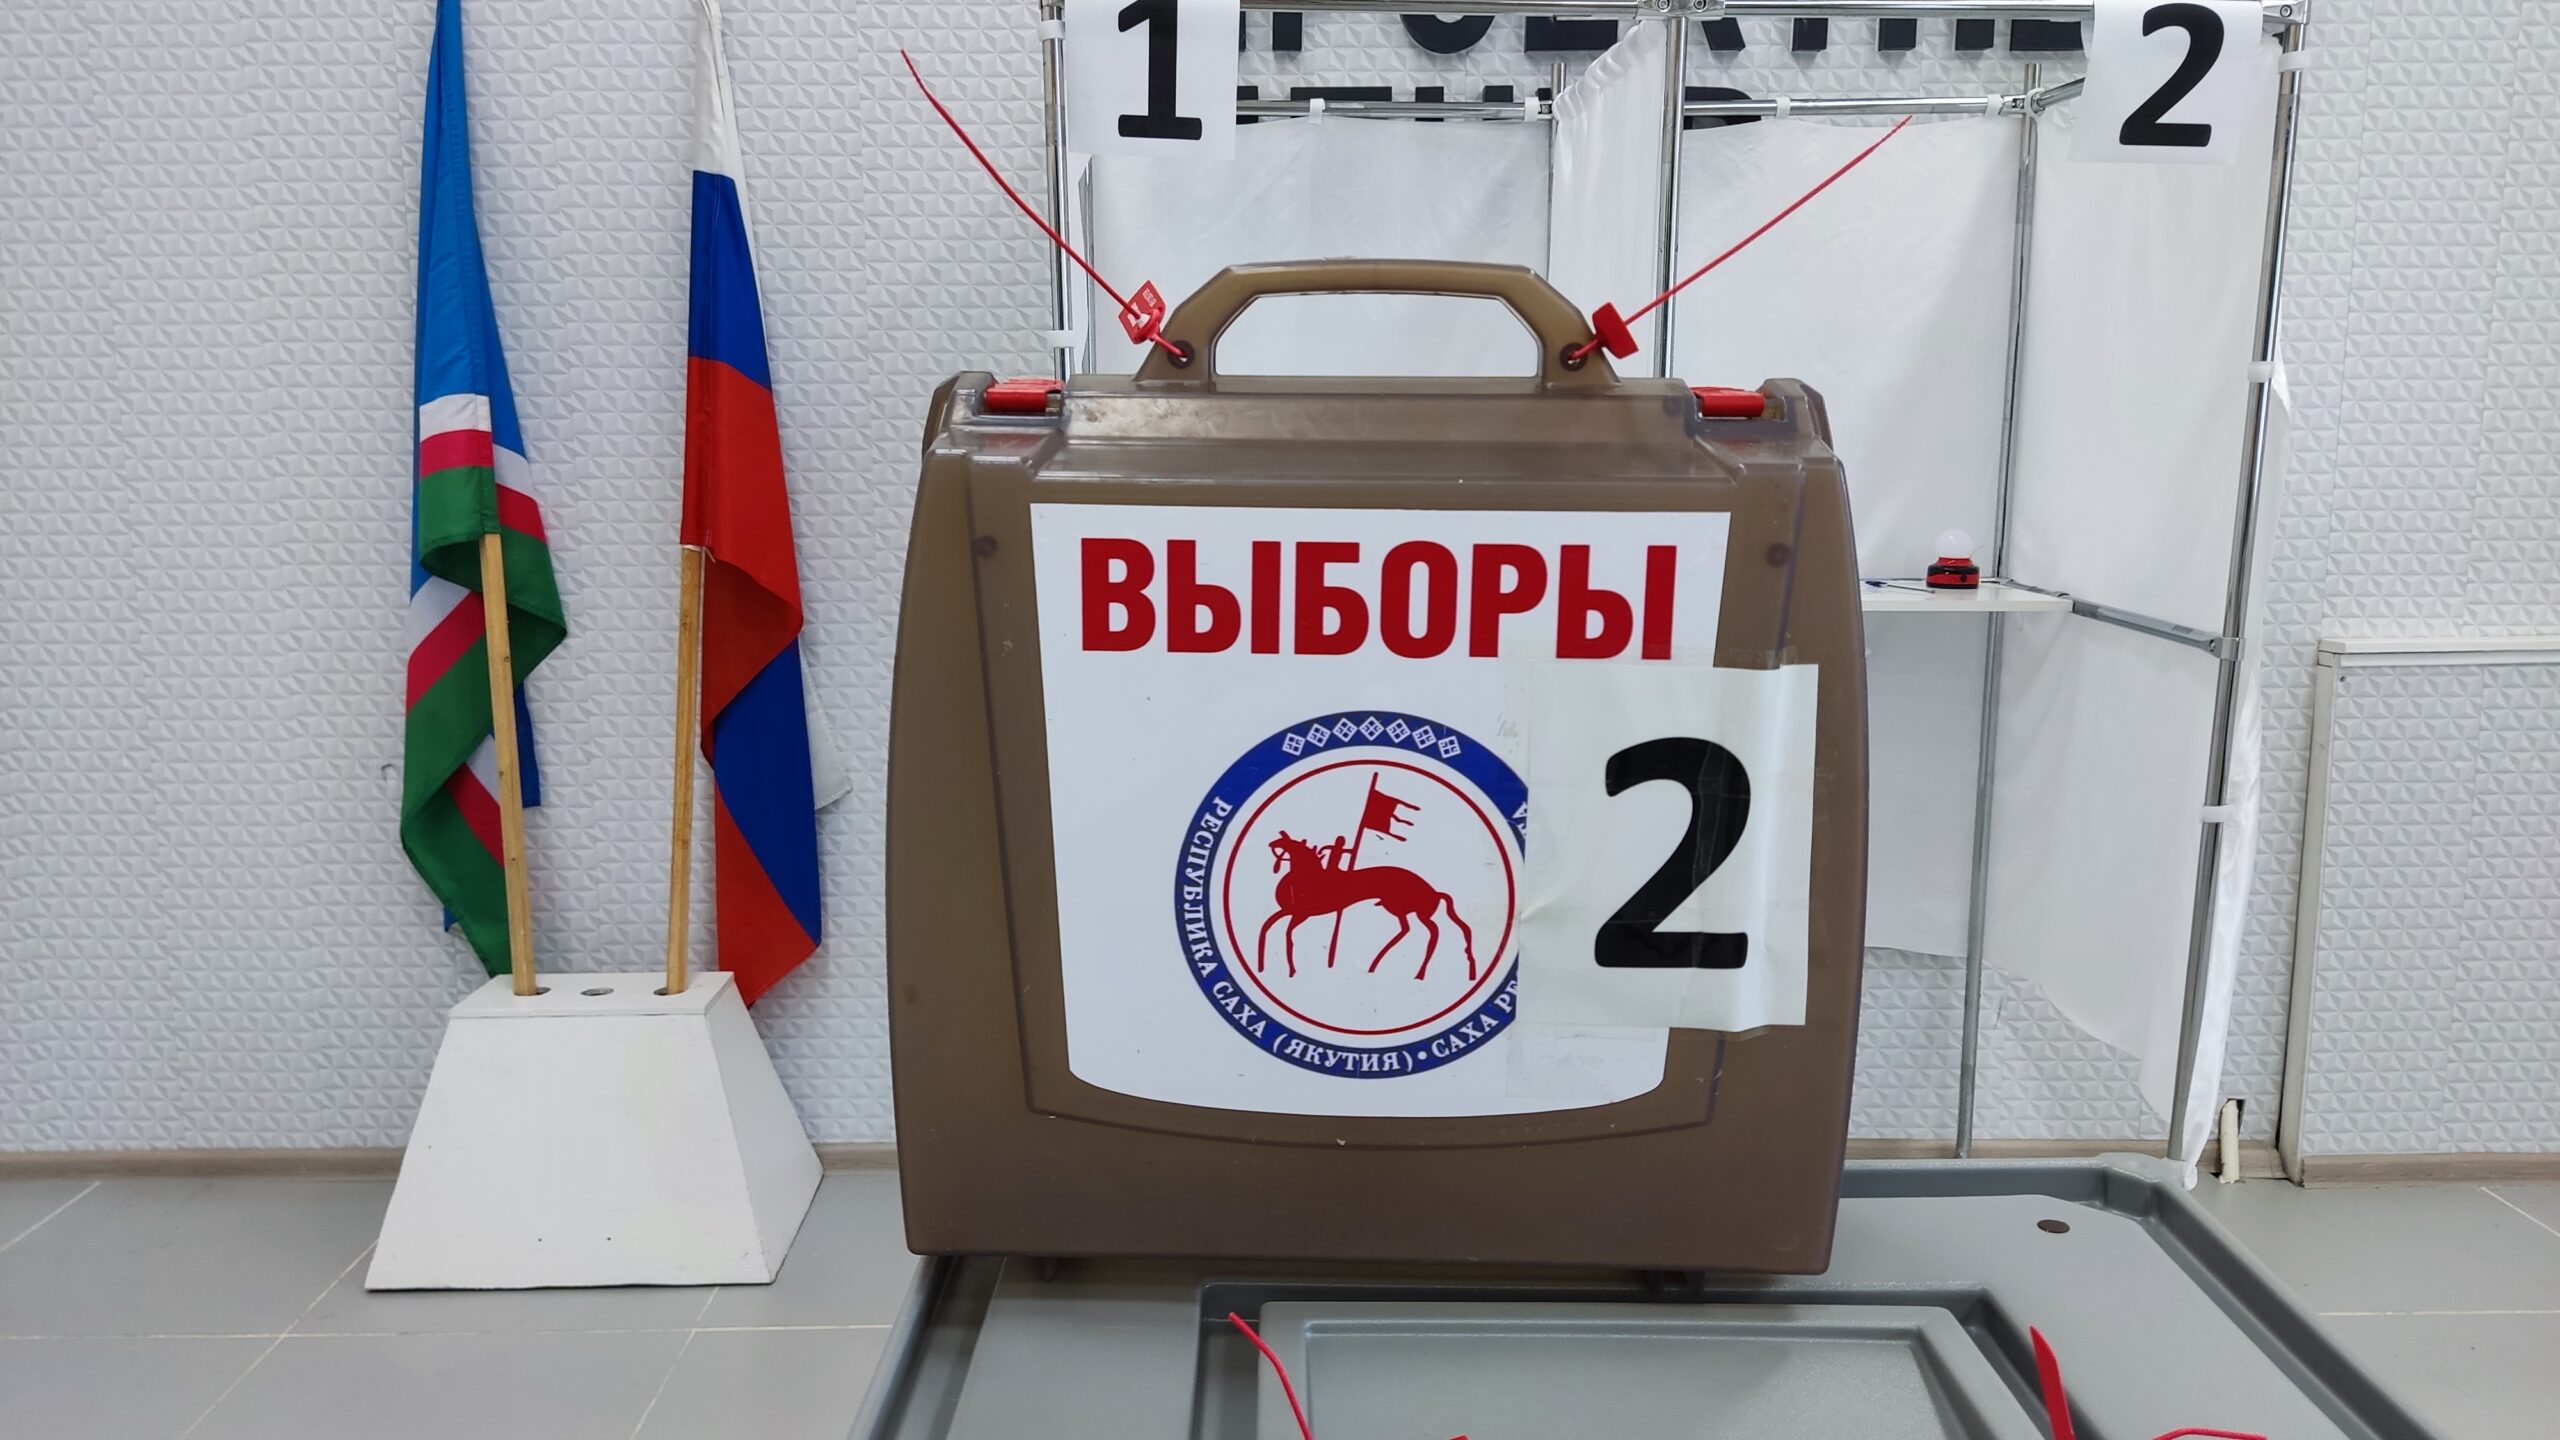 Порядка 270 тысяч жителей Якутии проголосовали на выборах